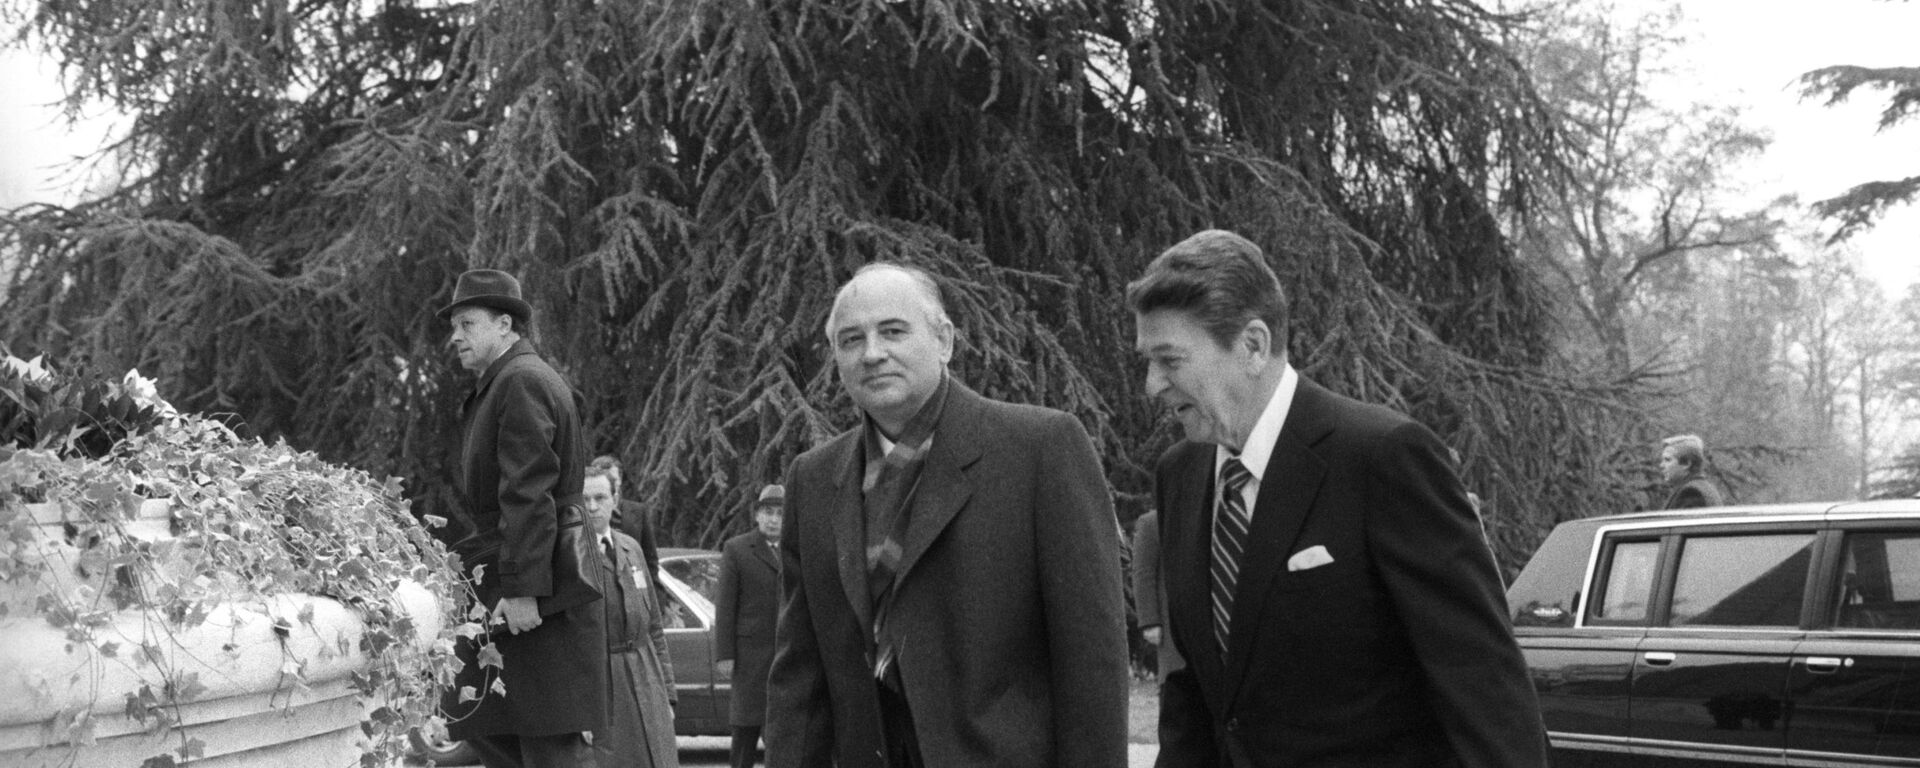 Reunión entre Gorbachov y Reagan en Ginebra (1985) - Sputnik Mundo, 1920, 20.11.2020